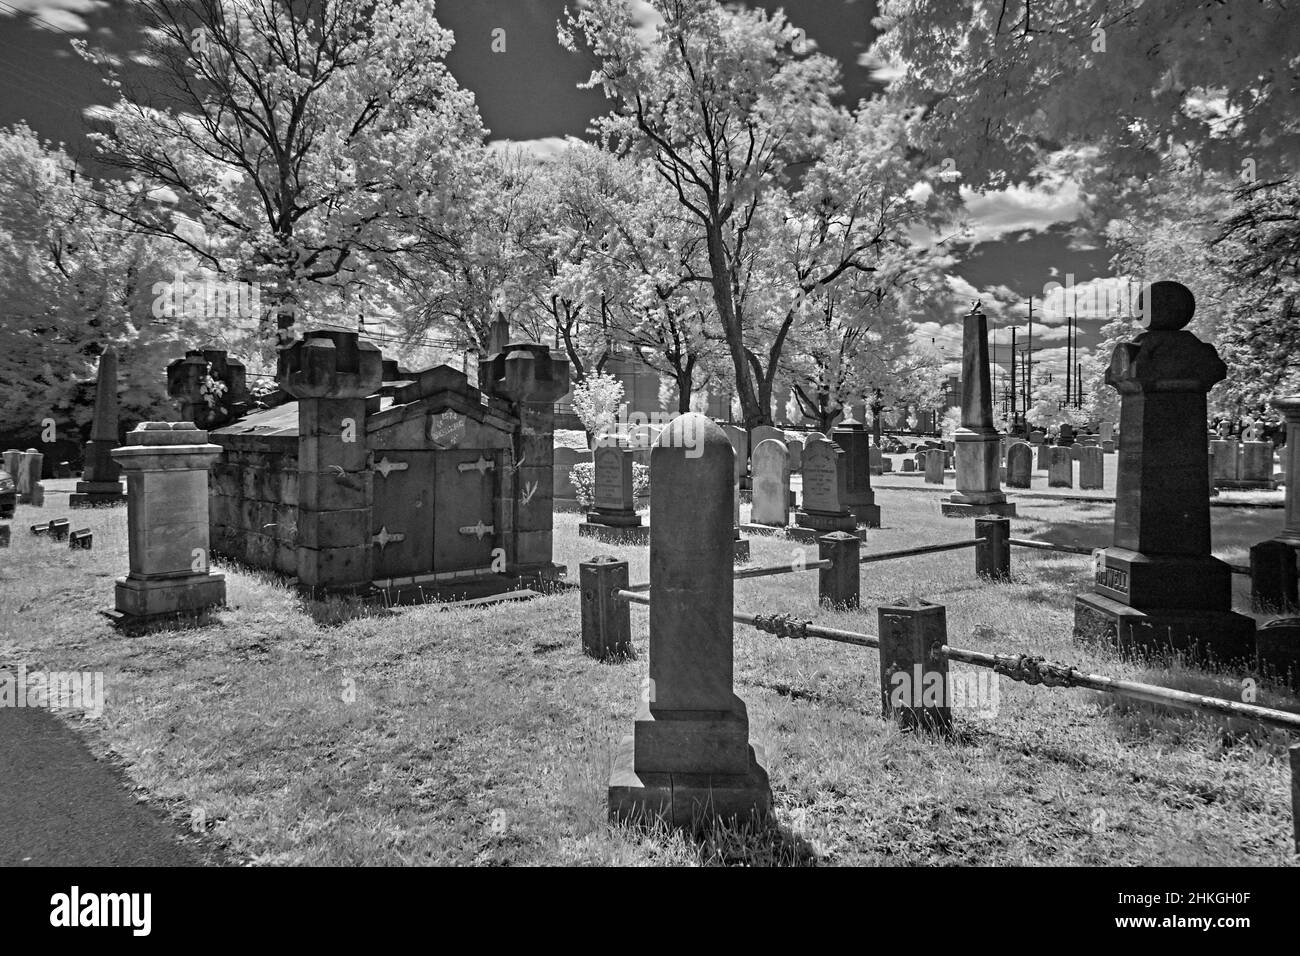 Un cimitero molto vecchio in un cortile della chiesa di riforma inglese del 1776. Questa foto a infrarossi, astratta, in bianco e nero è spaventosa e un buon look per Halloween. Foto Stock